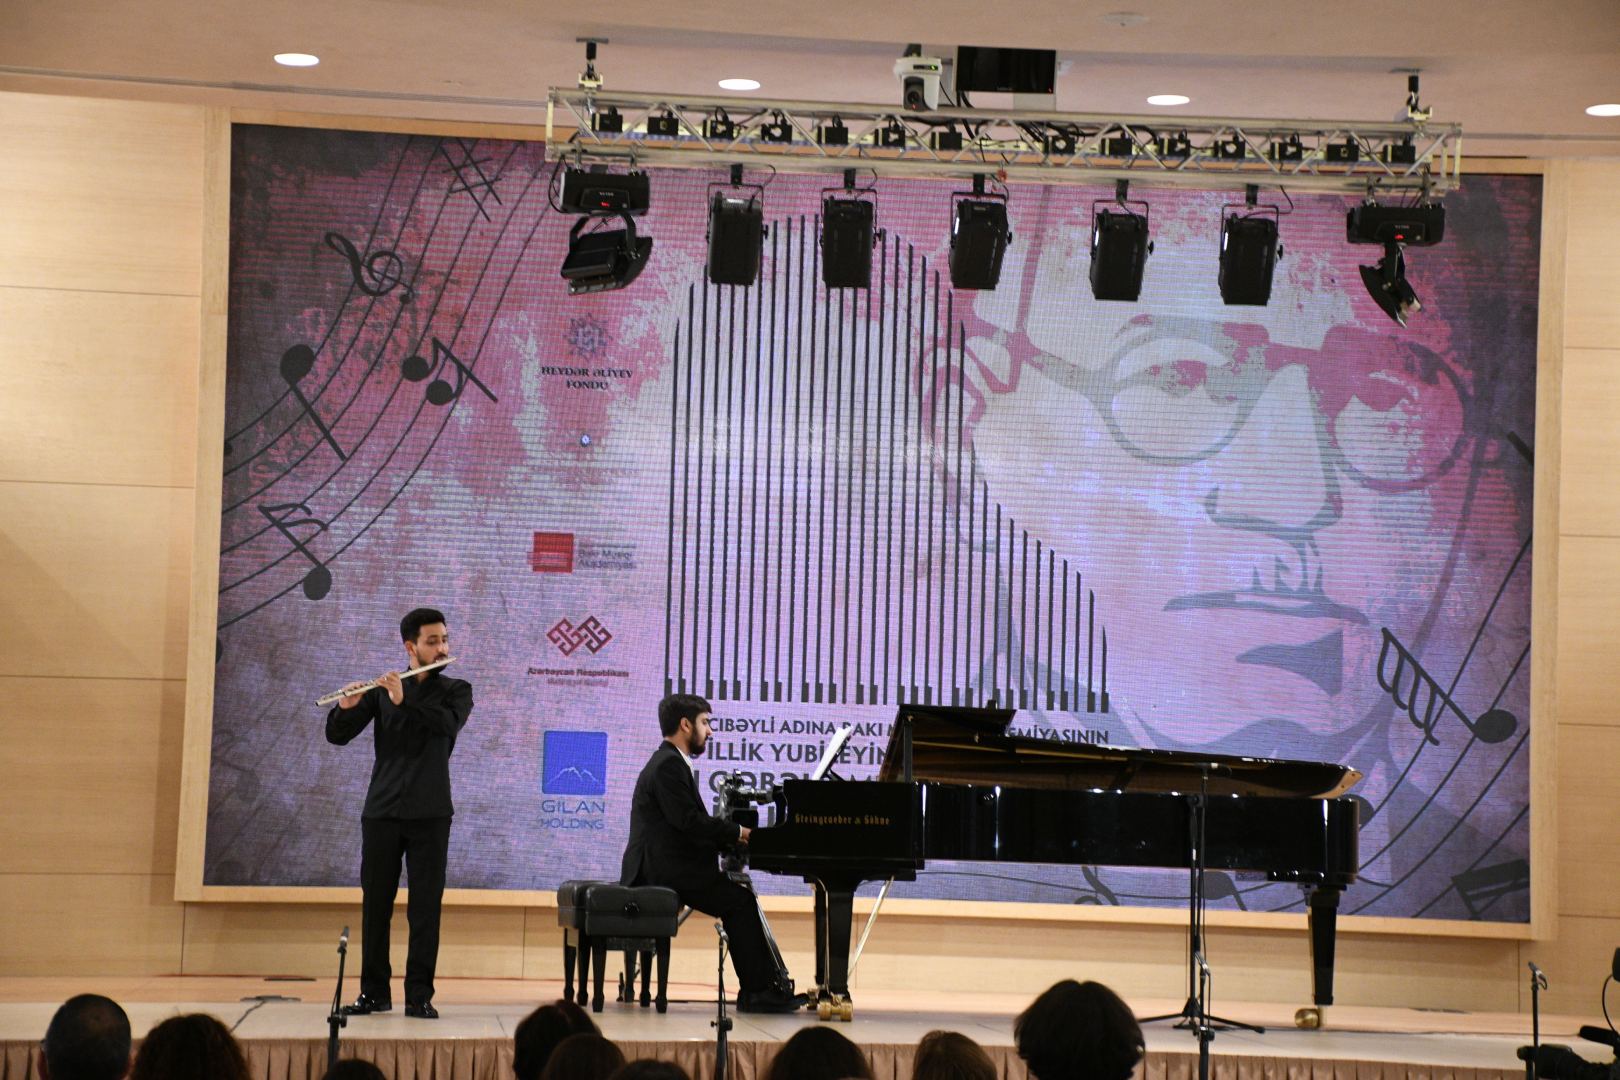 Концерт в Габале раскрыл все грани таланта молодых исполнителей (ФОТО/ВИДЕО)